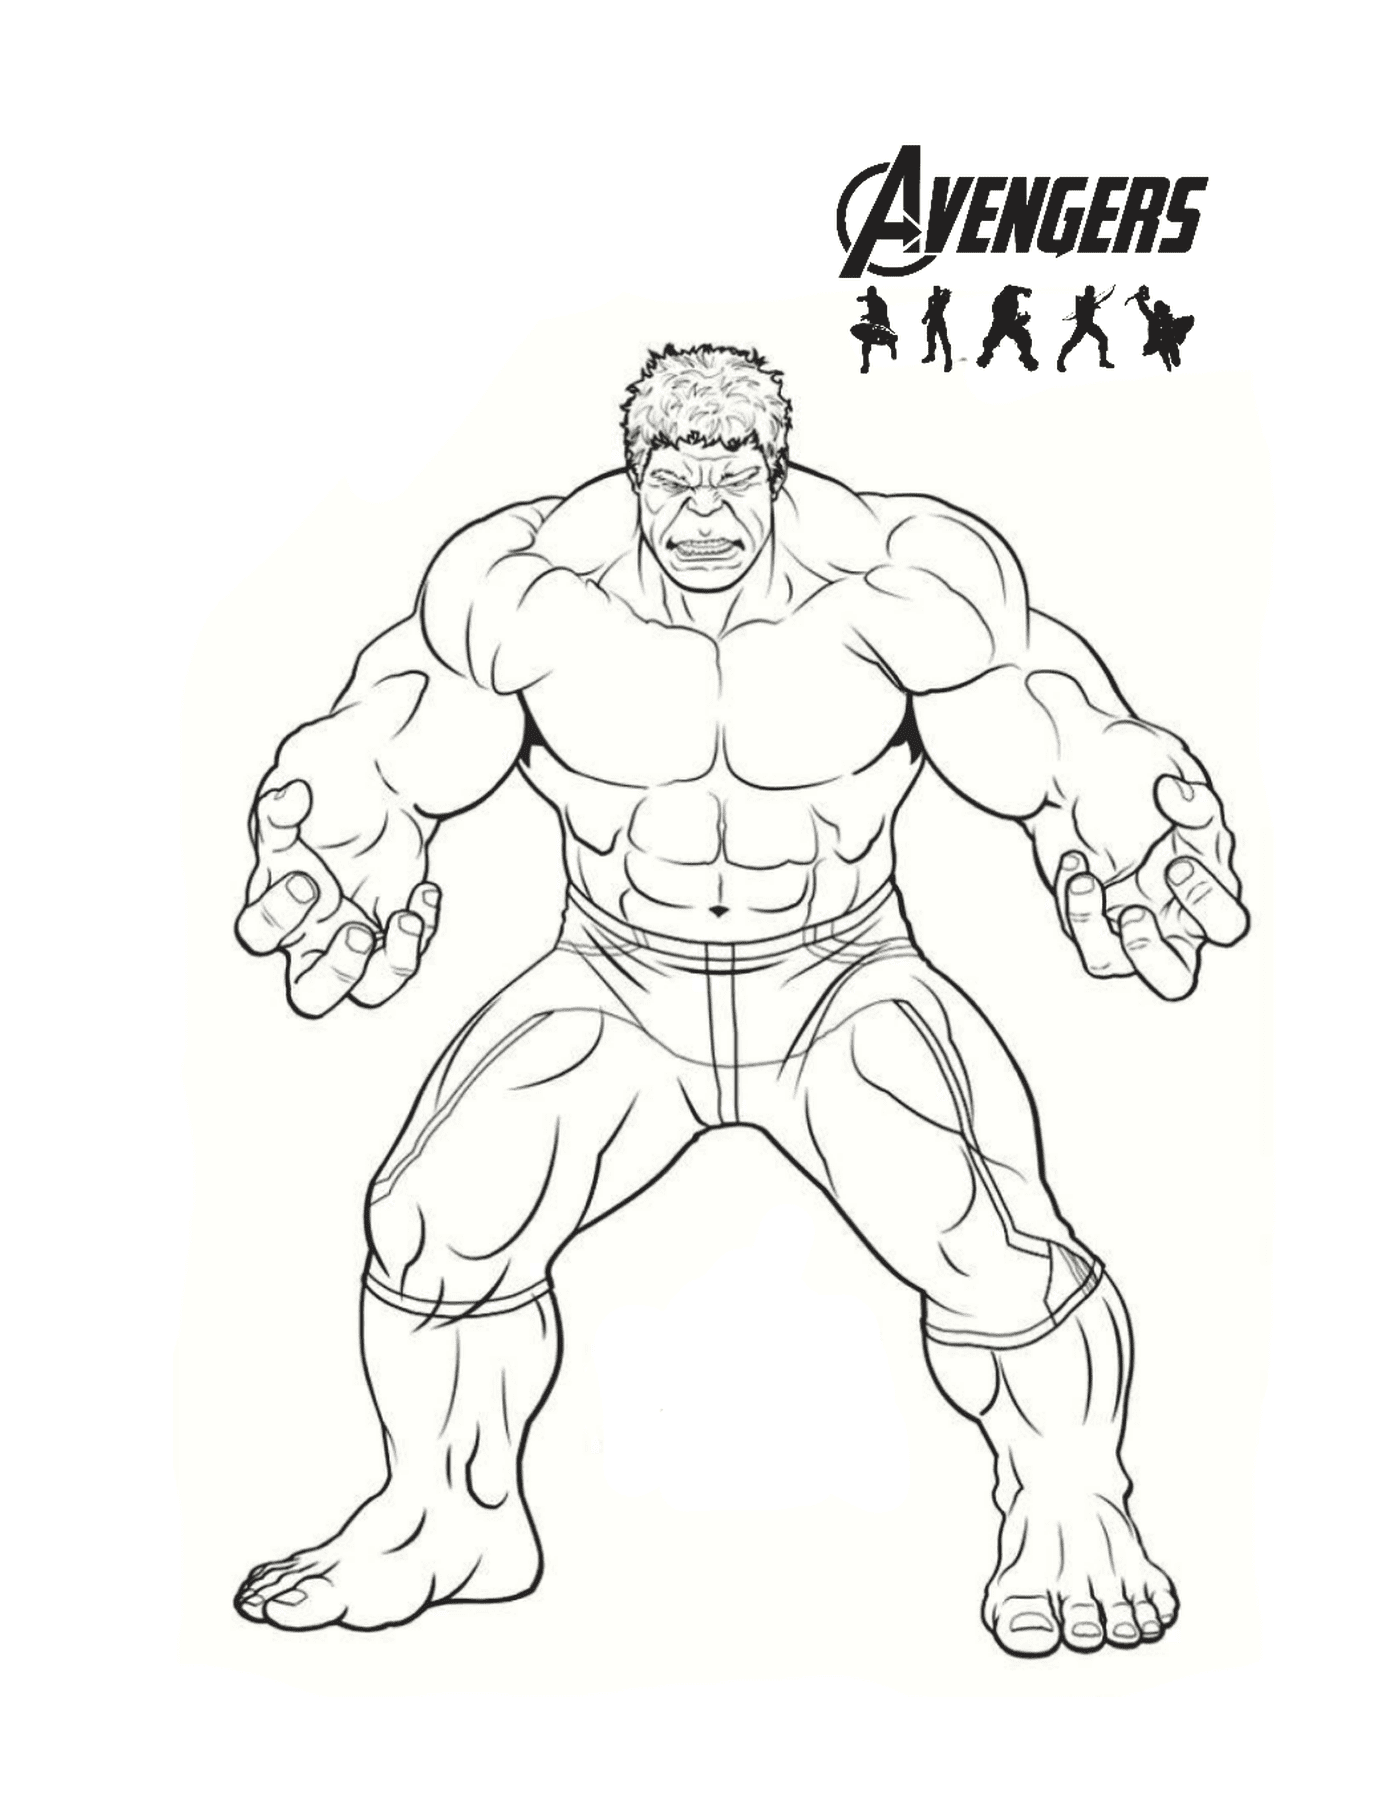  Hulk dalle proporzioni impressionanti 